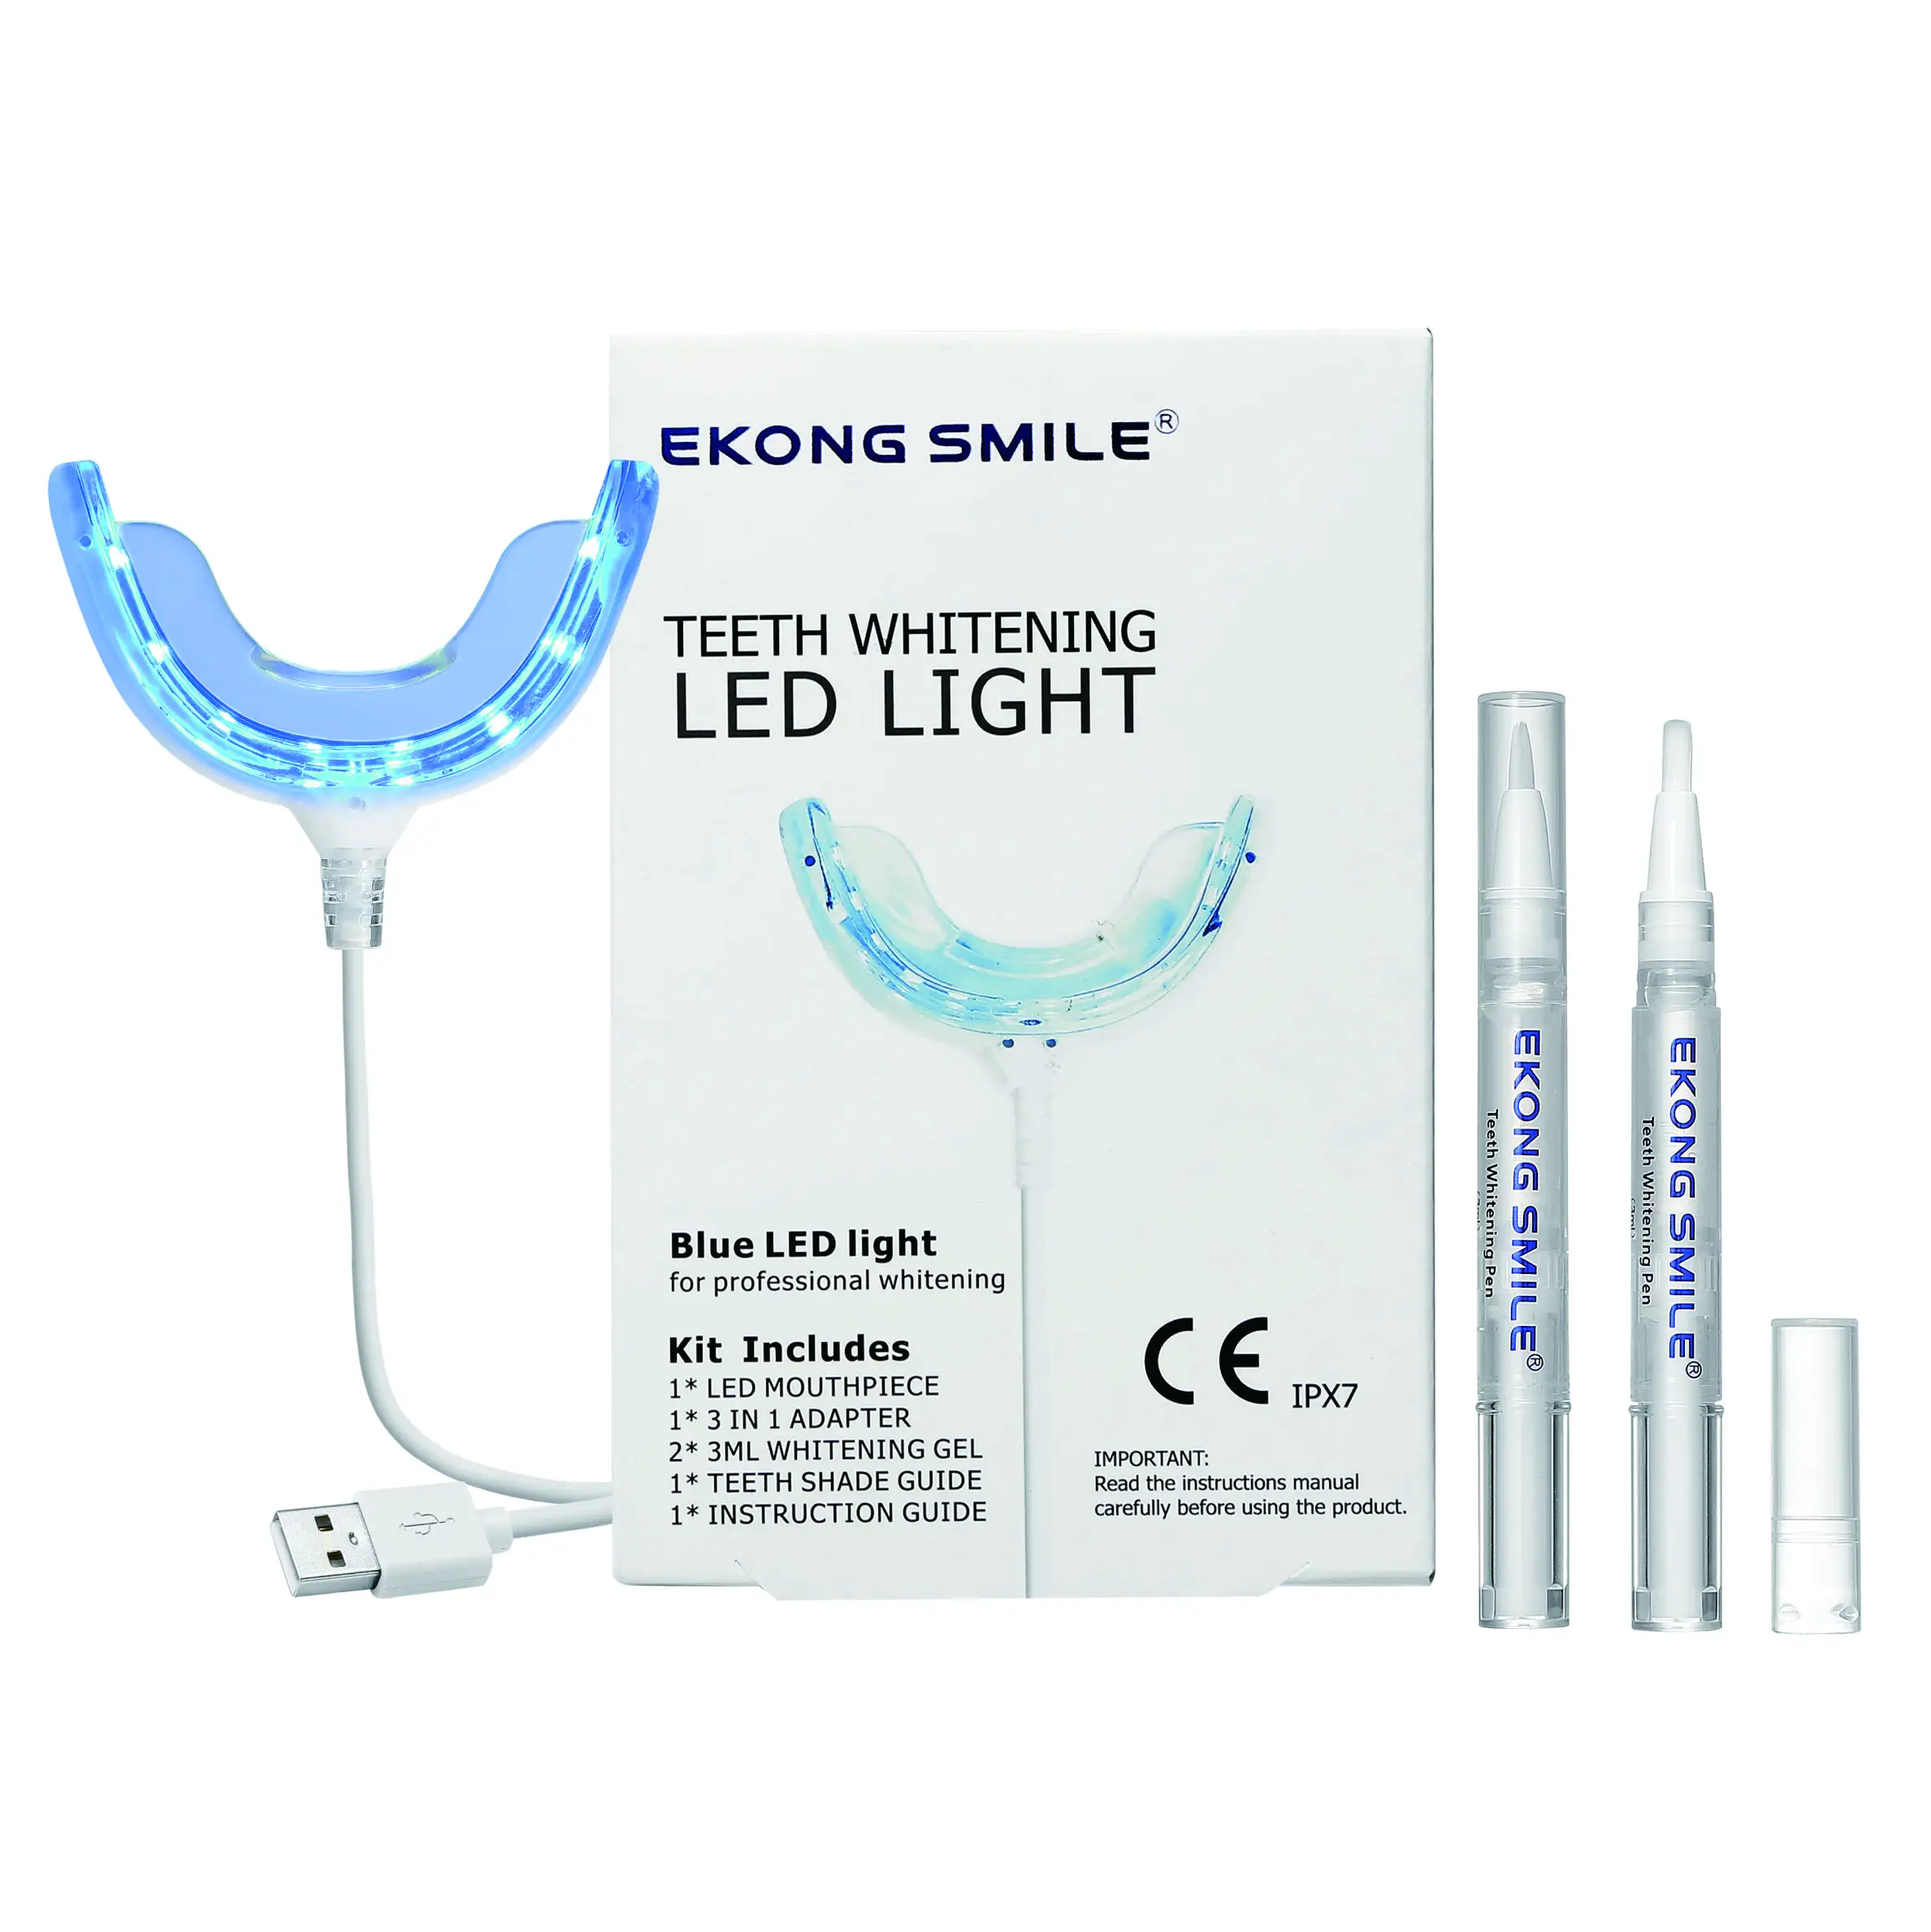 नई स्मार्ट स्नो व्हाइट दांत सफेद करने वाली किट 16 बल्ब ब्लीचिंग लाइट प्राइवेट लेबल ब्लीचिंग पेन नॉन पेरोक्साइड सीई के साथ